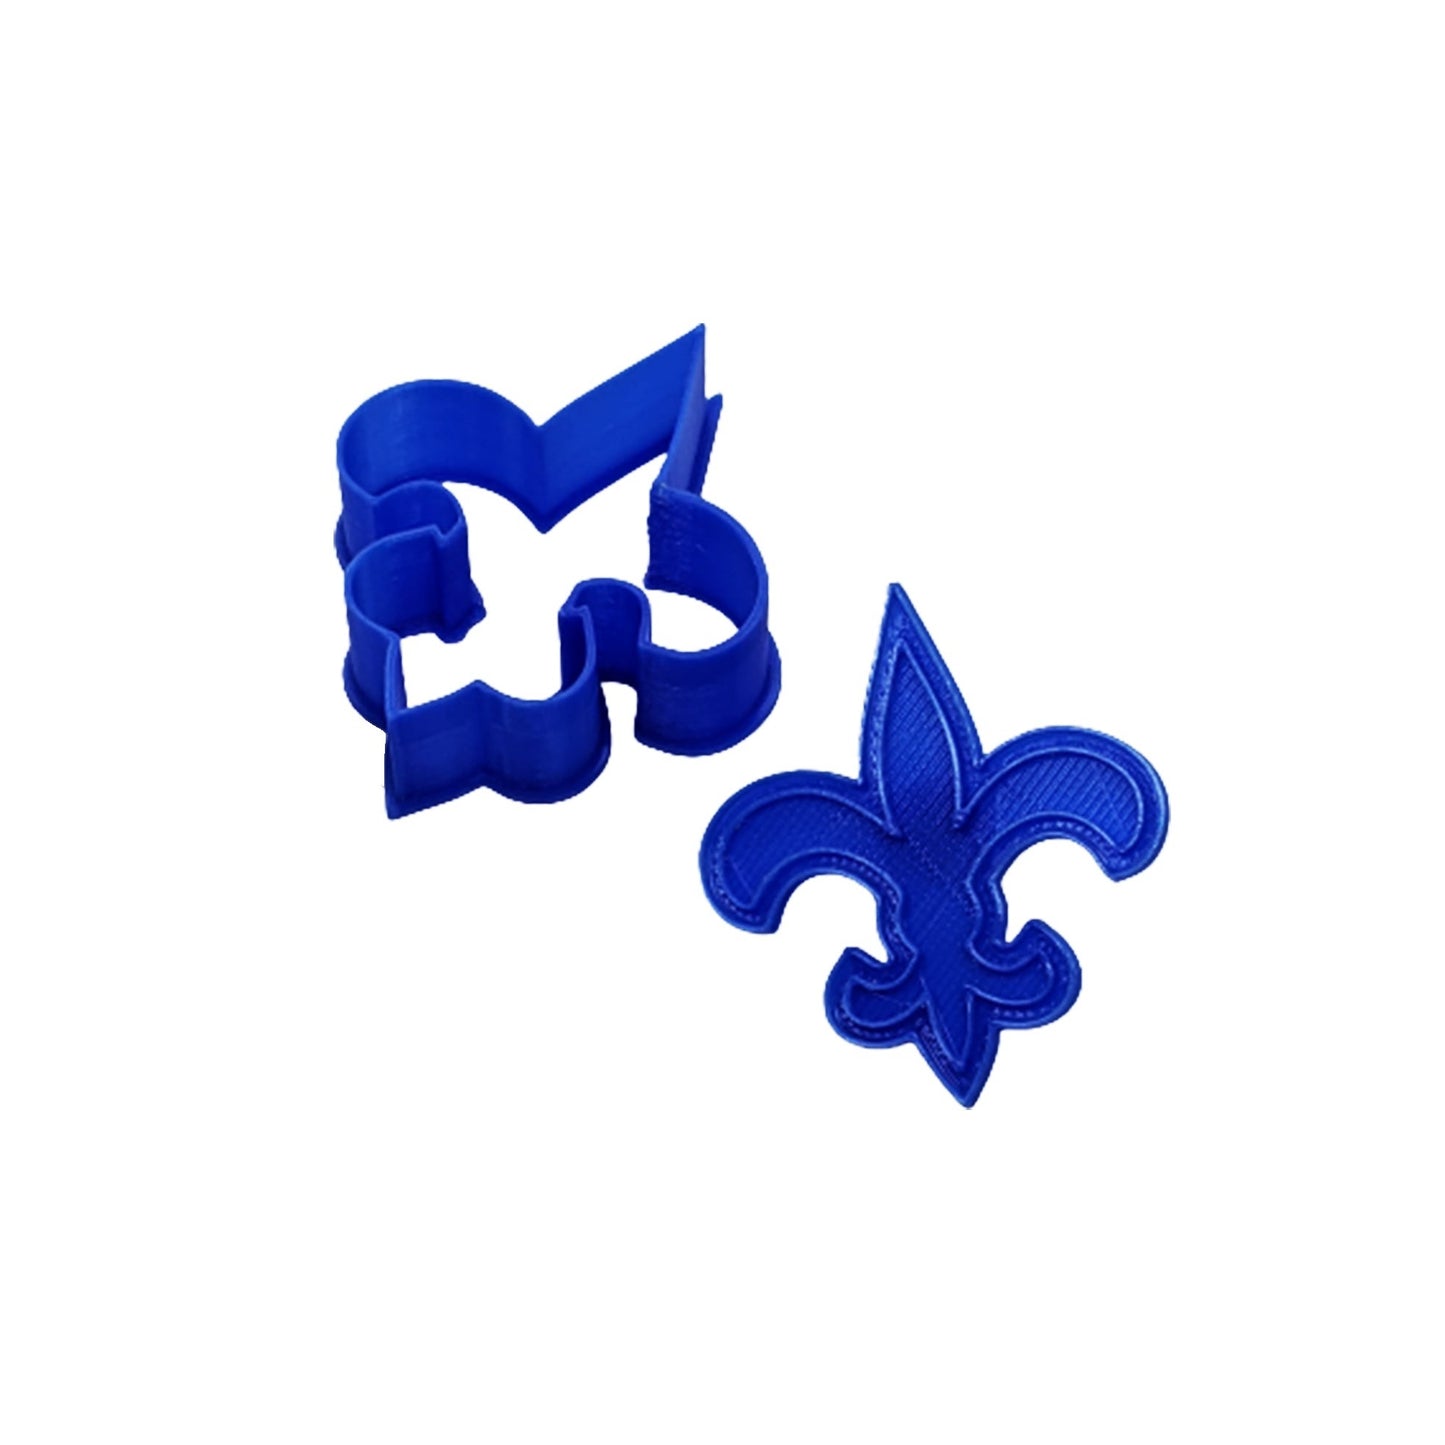 New Orleans Fleur De Lys Cookie Cutter & Stamp Set